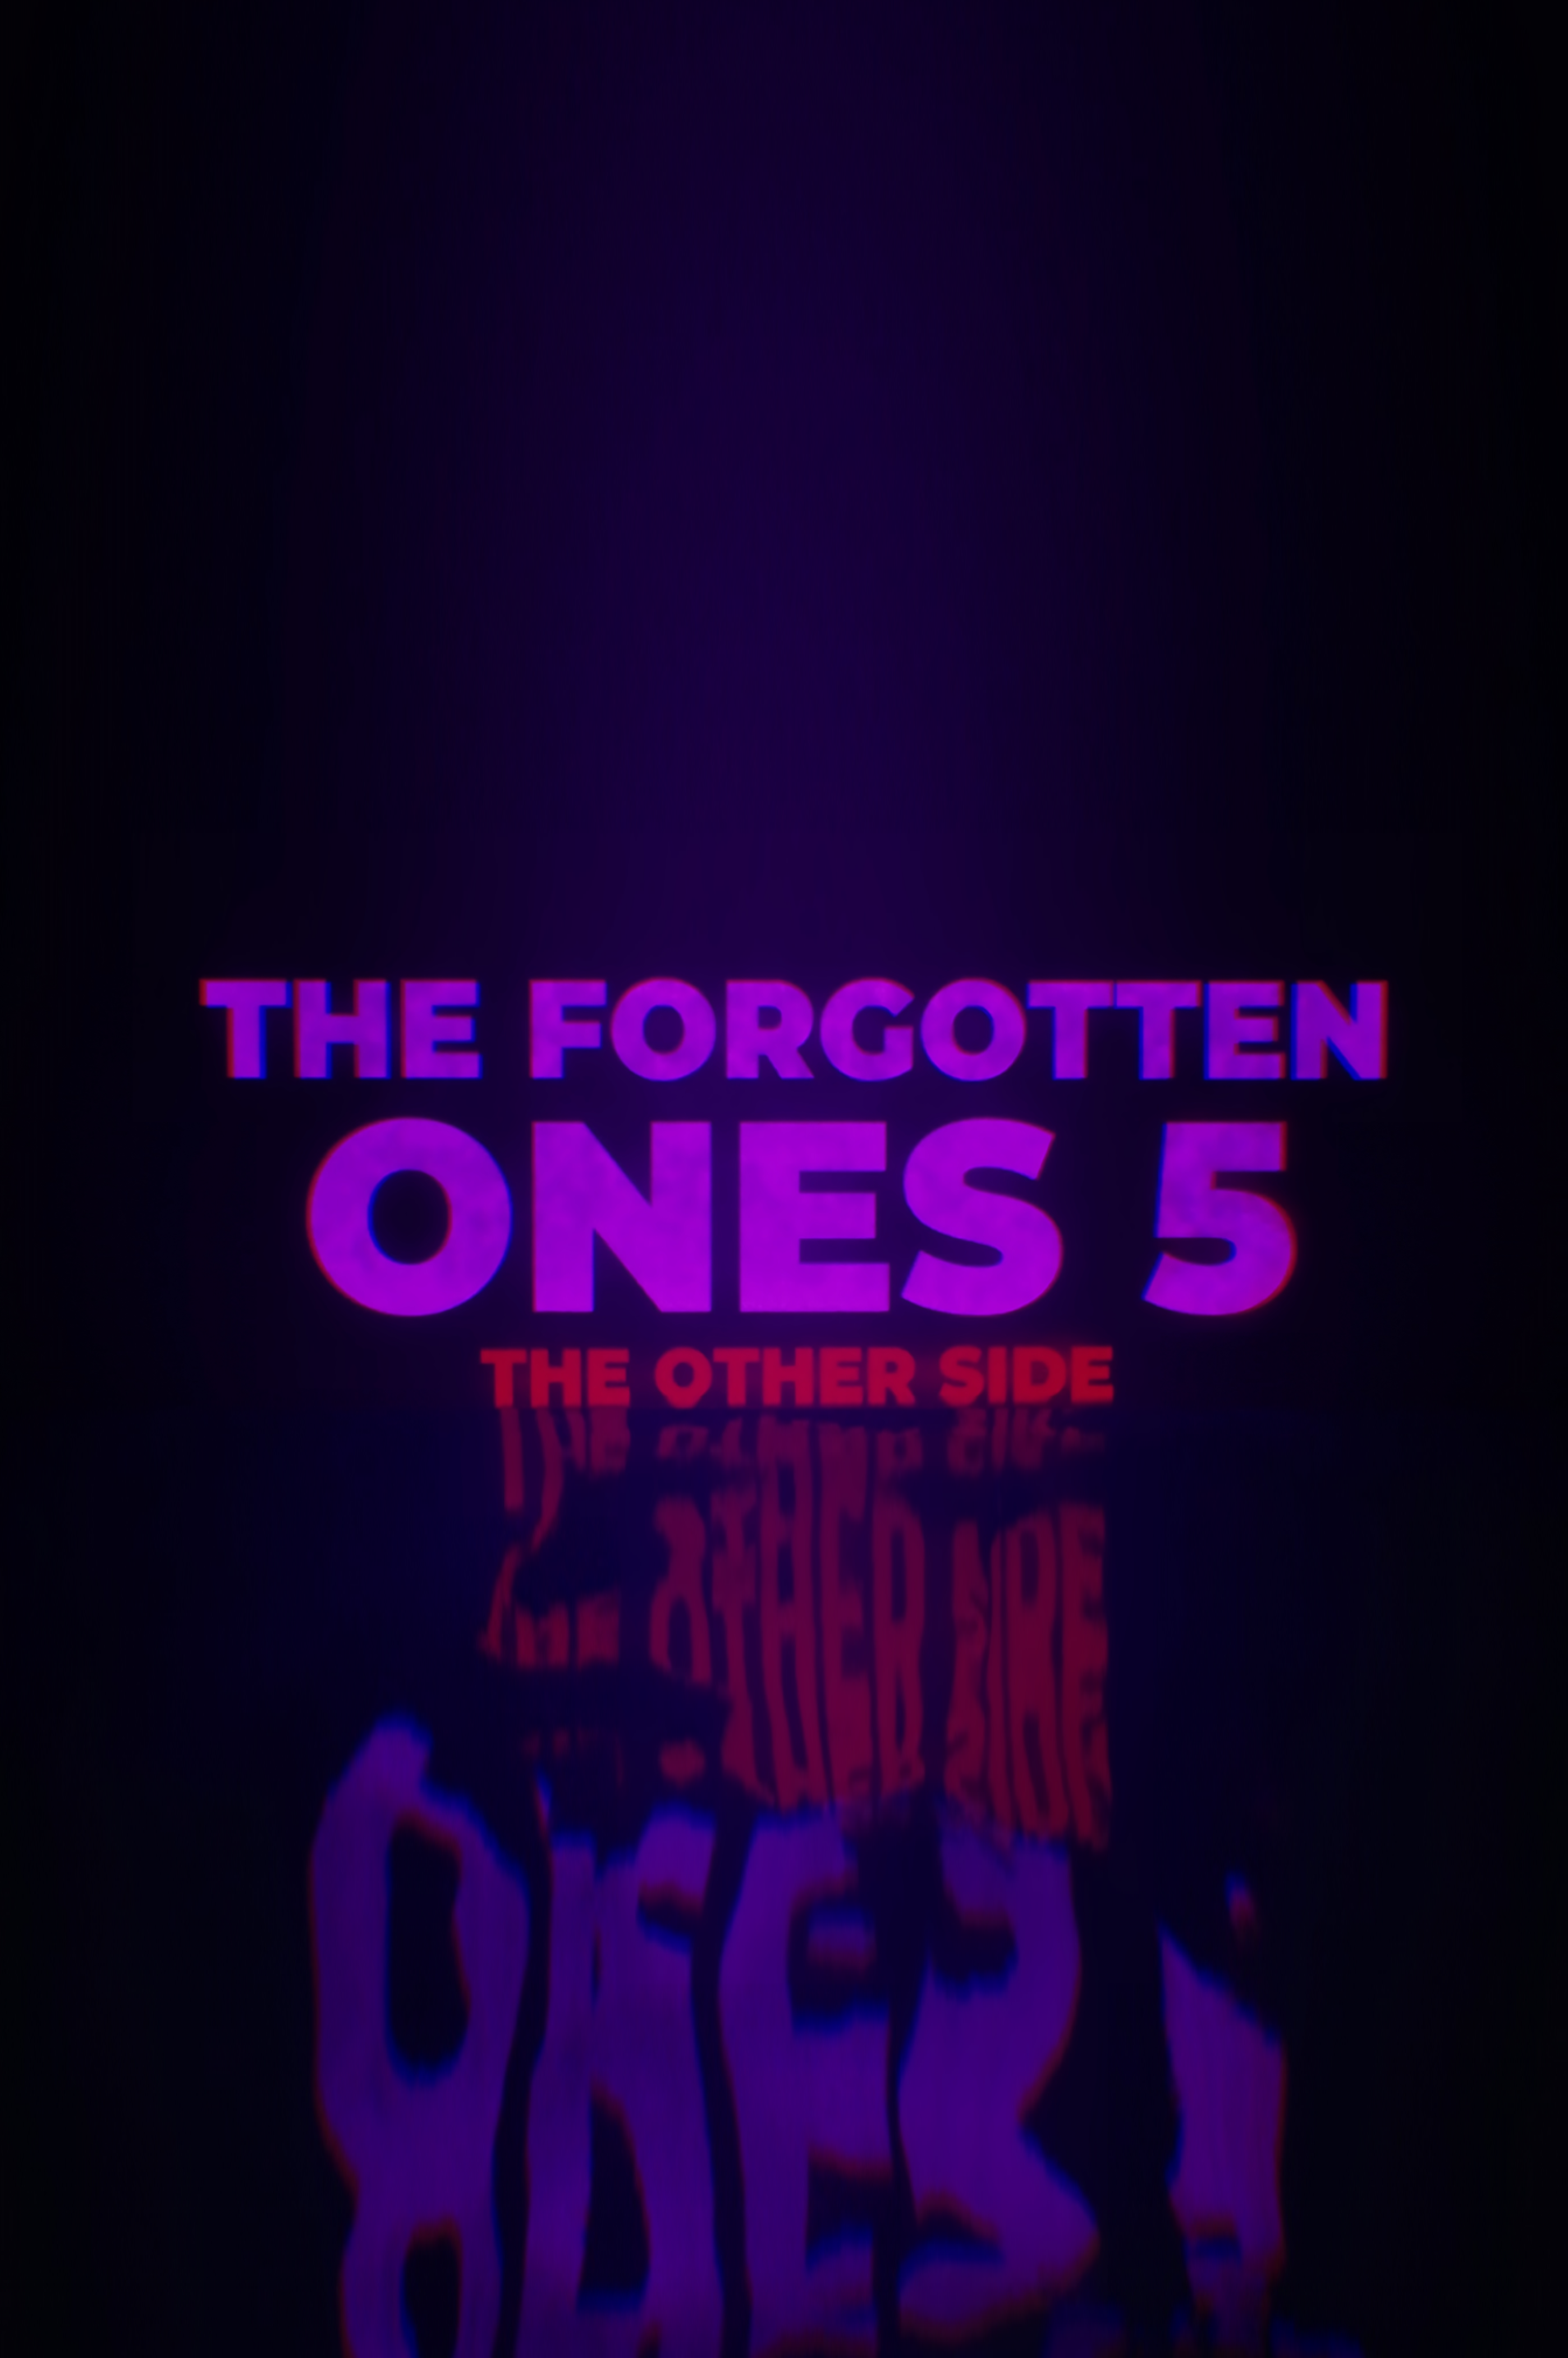 THE FORGOTTEN ONES 5